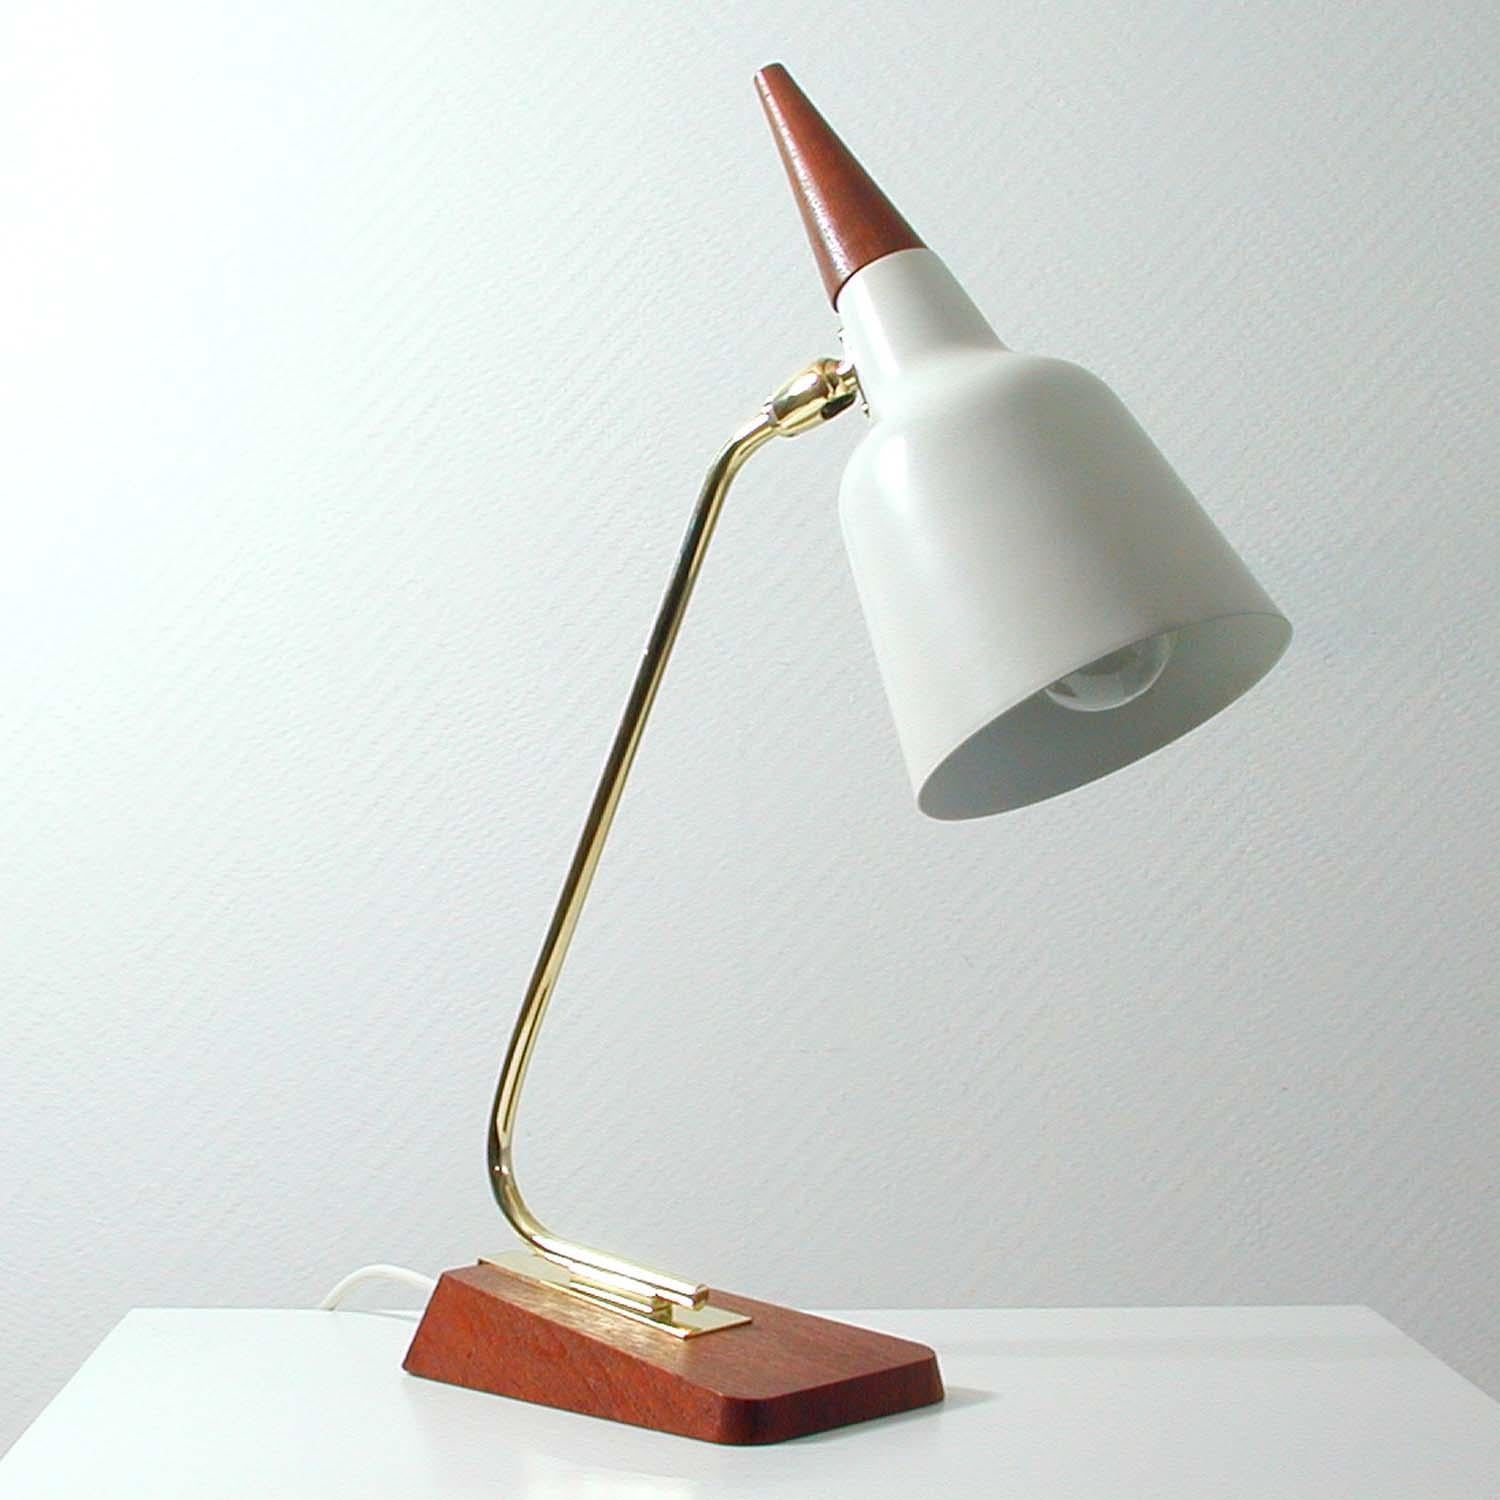 Cette lampe de table ou de bureau très rare et élégante a été conçue et fabriquée en Allemagne dans les années 1950 par Kaiser Leuchten. Elle est composée d'une base en teck et en laiton, d'un bras de lampe en laiton et d'un abat-jour réglable en